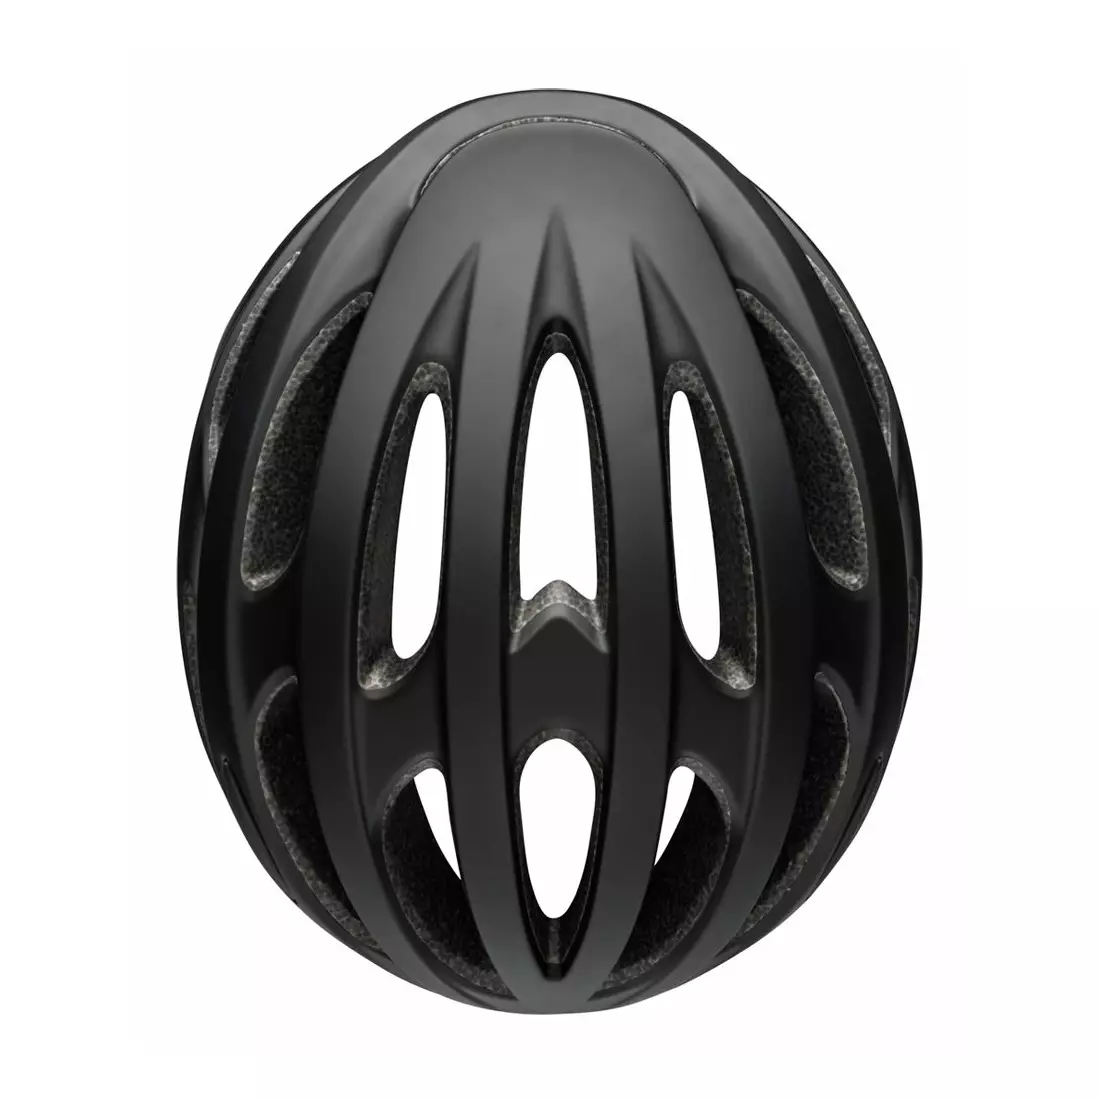 BELL FORMULA helma na silniční kolo, matte gloss black gray